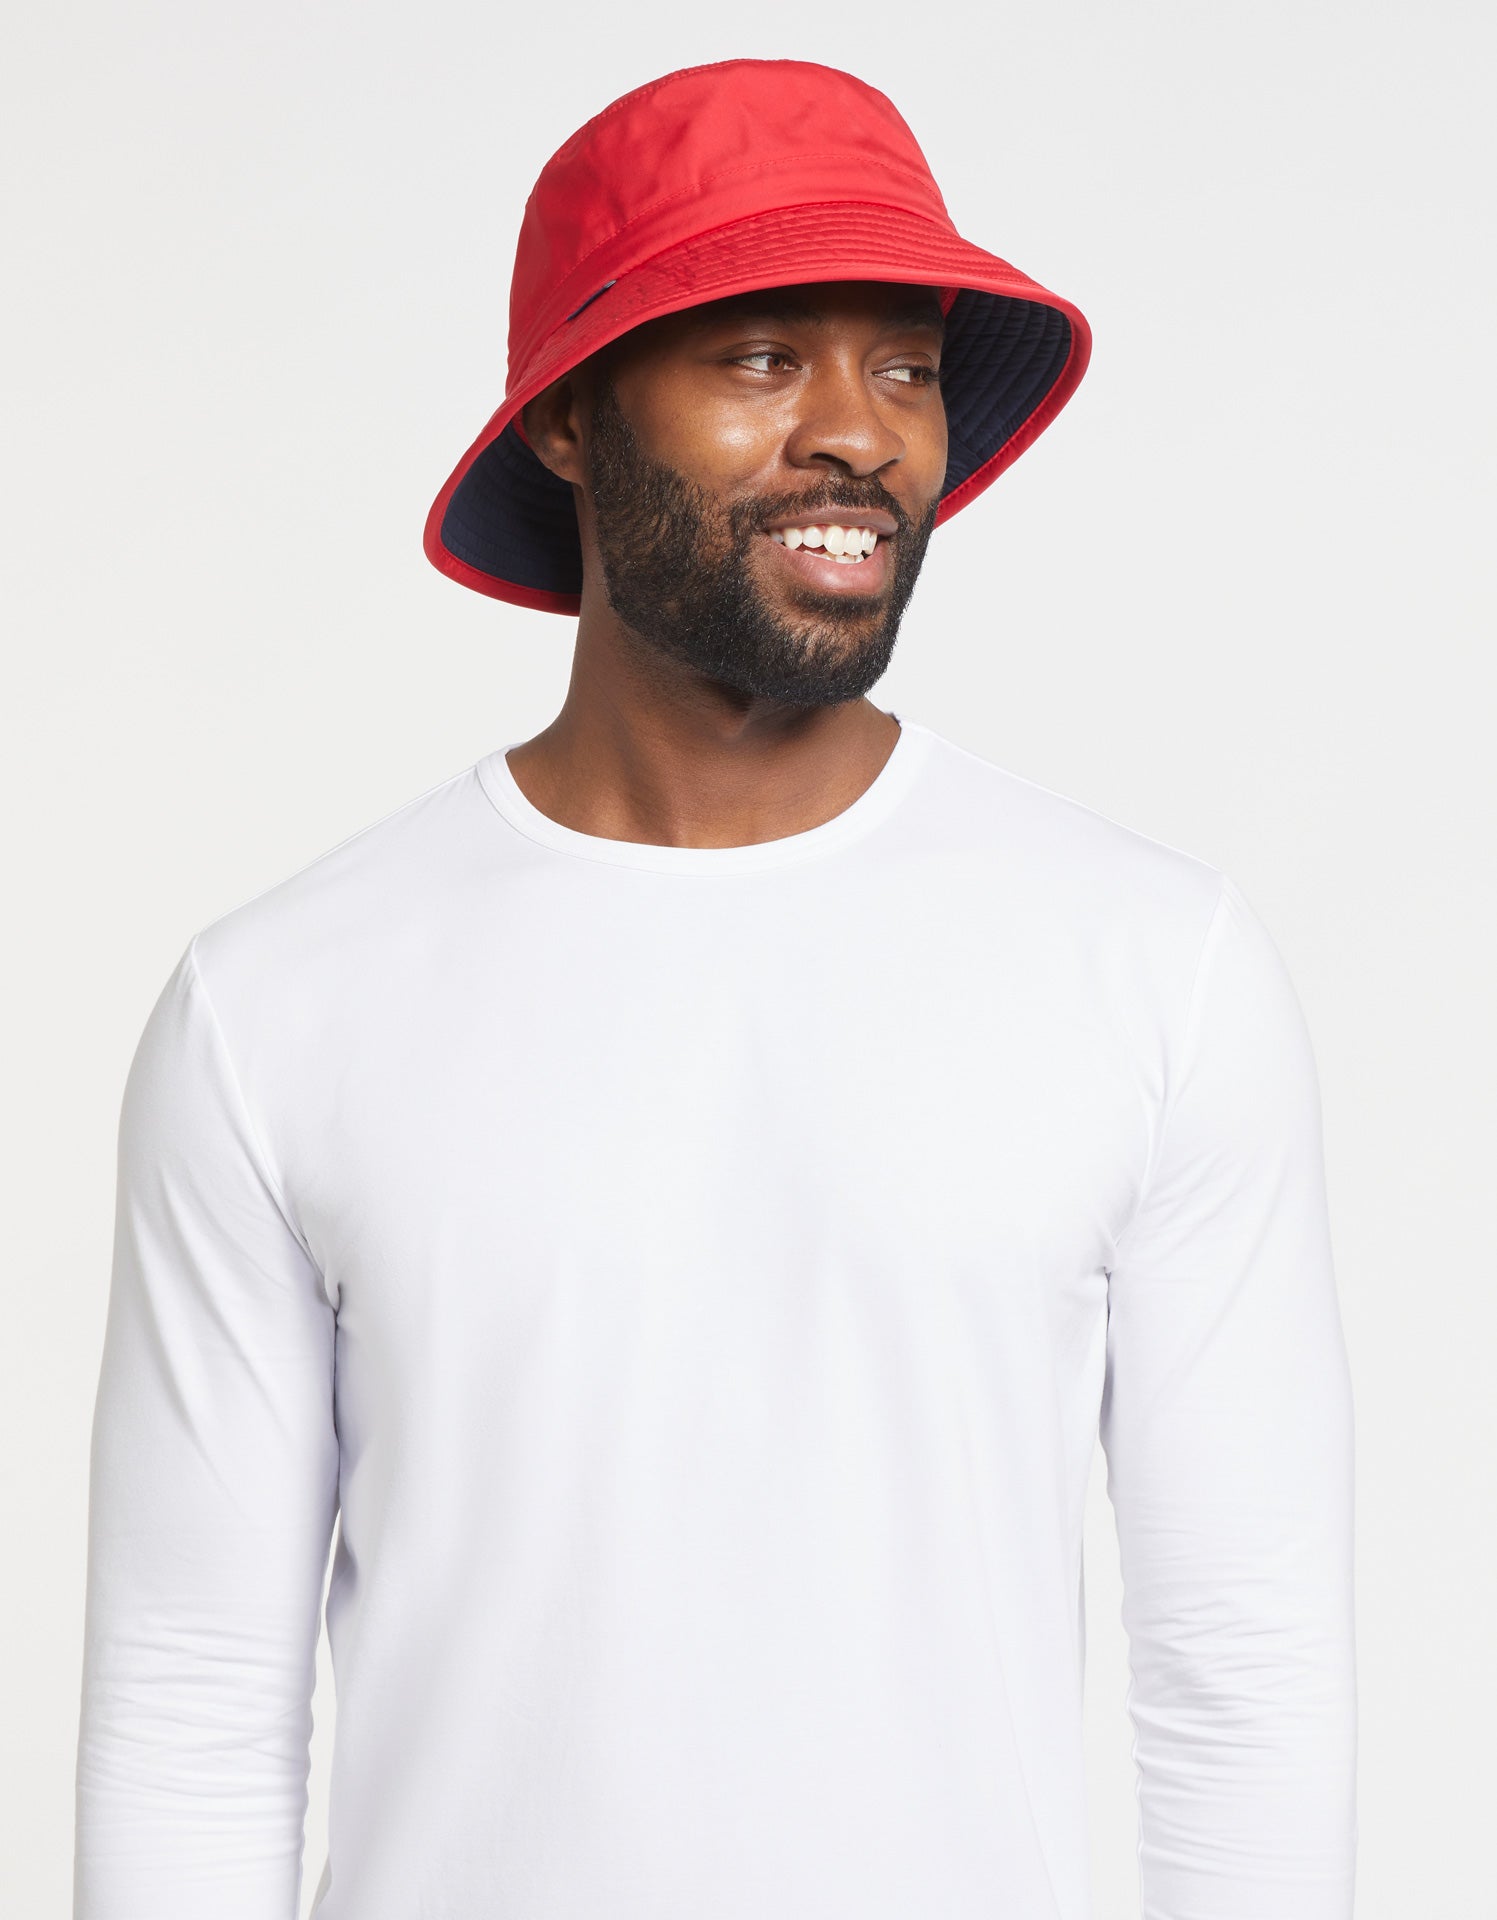 Go-To Bucket Sun Hat For Men UPF50+, Men's Sun Hat